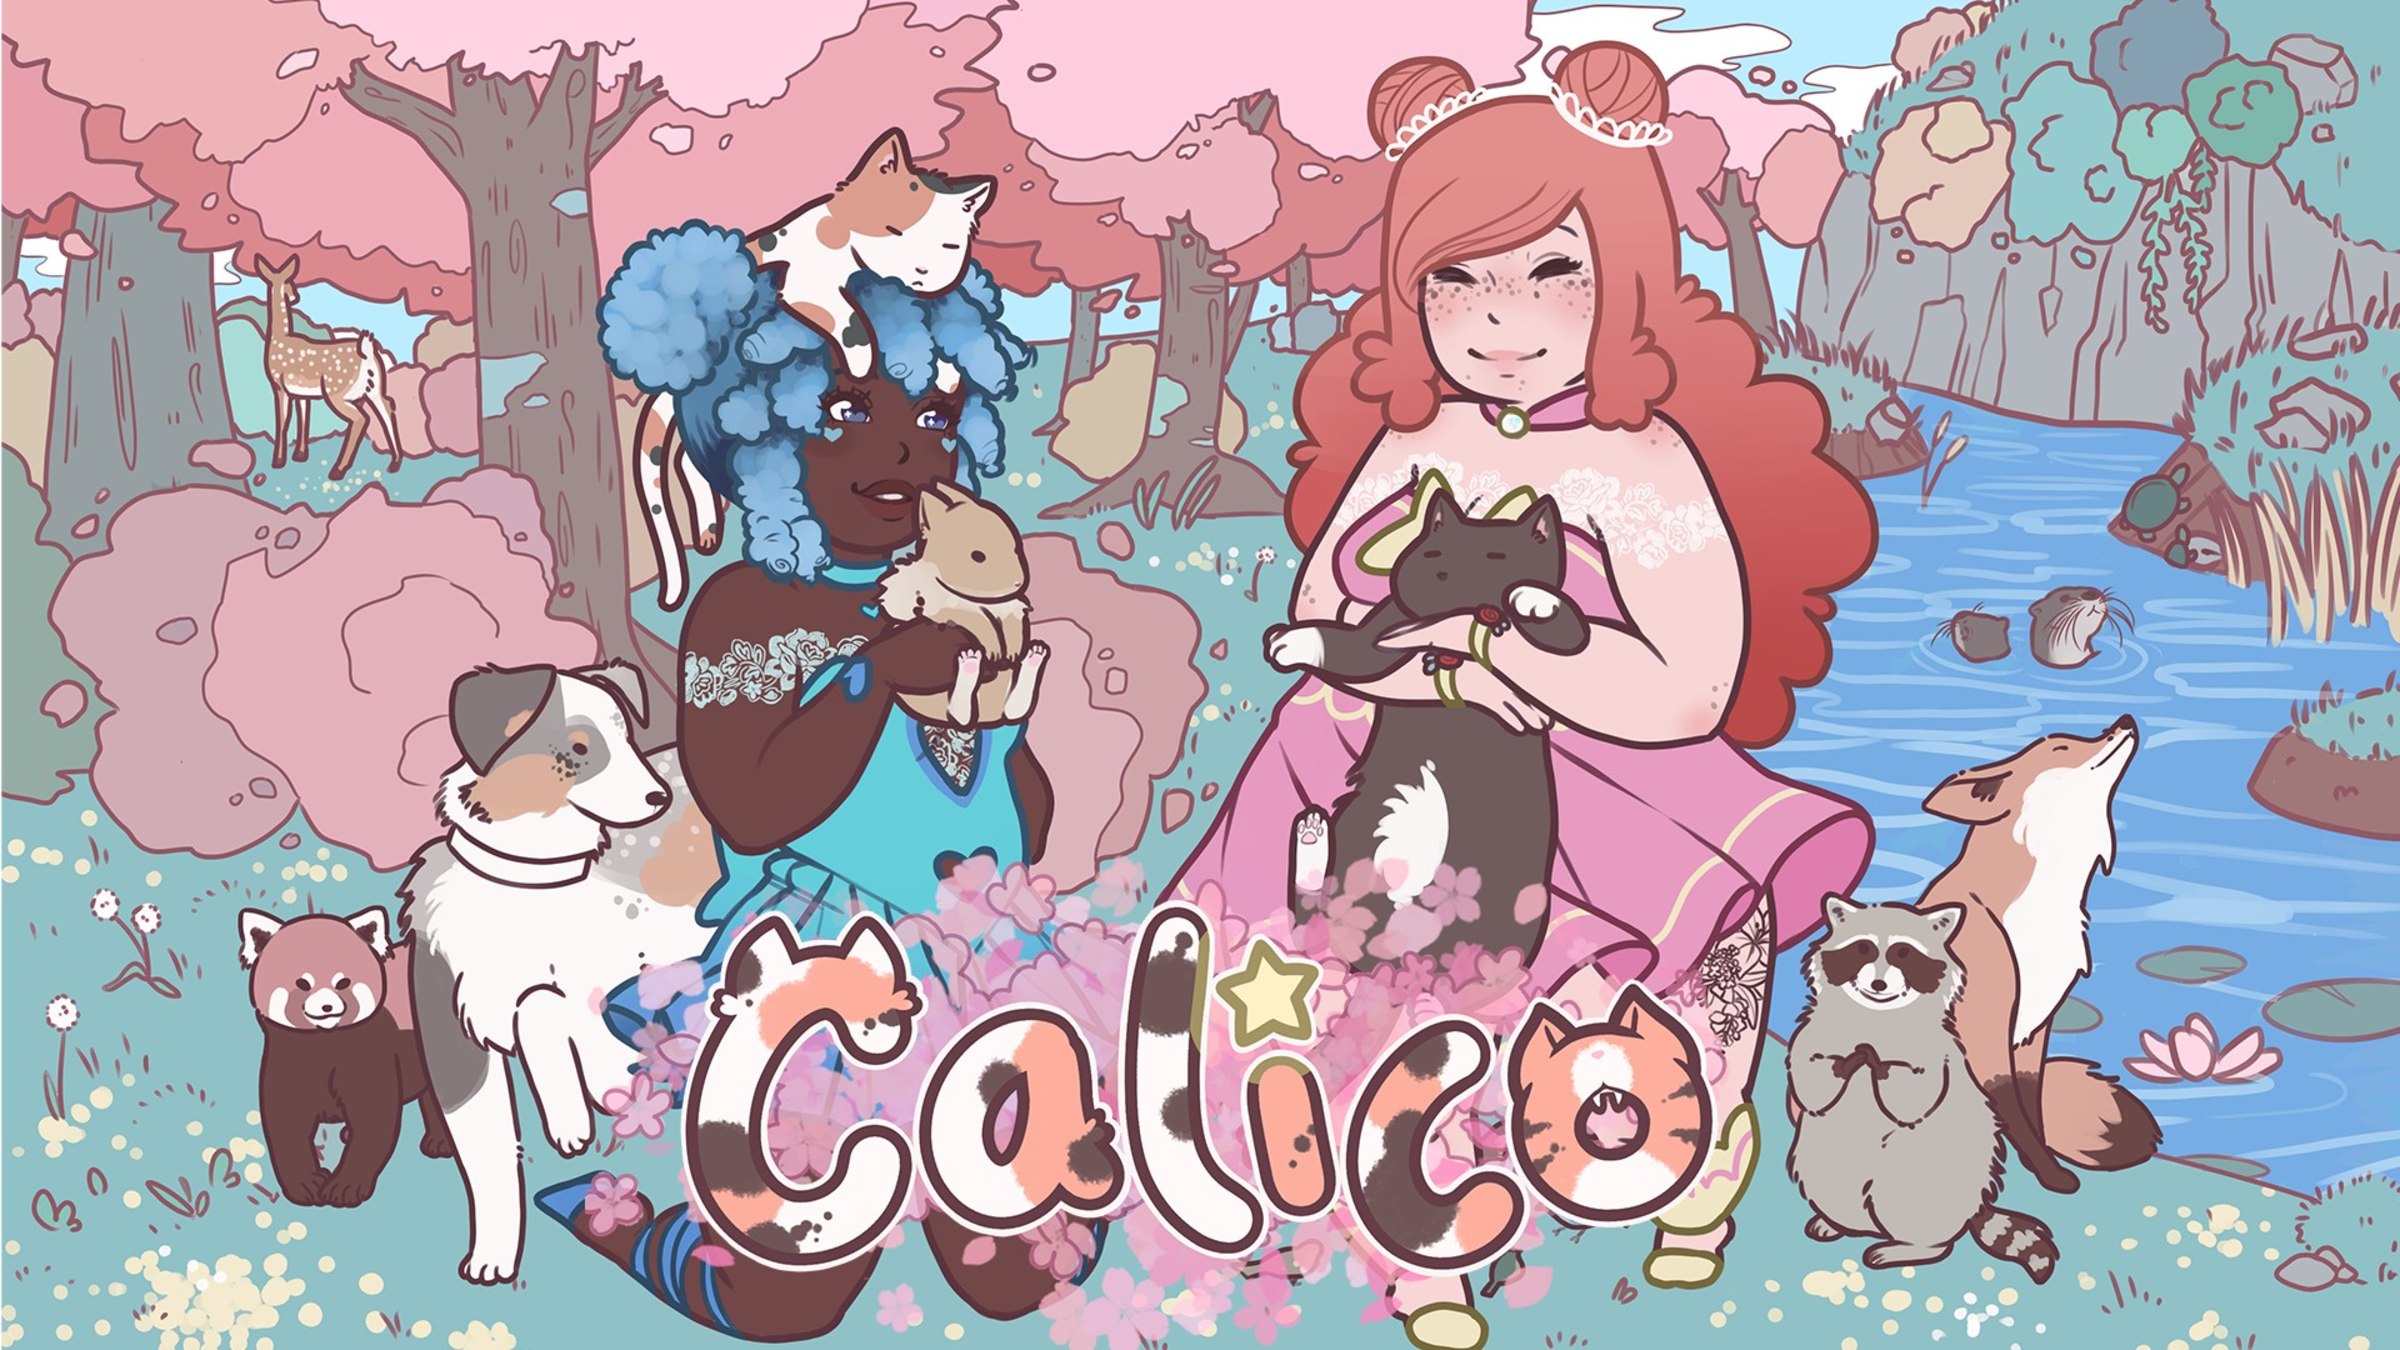 Calico - Nintendo Official Site